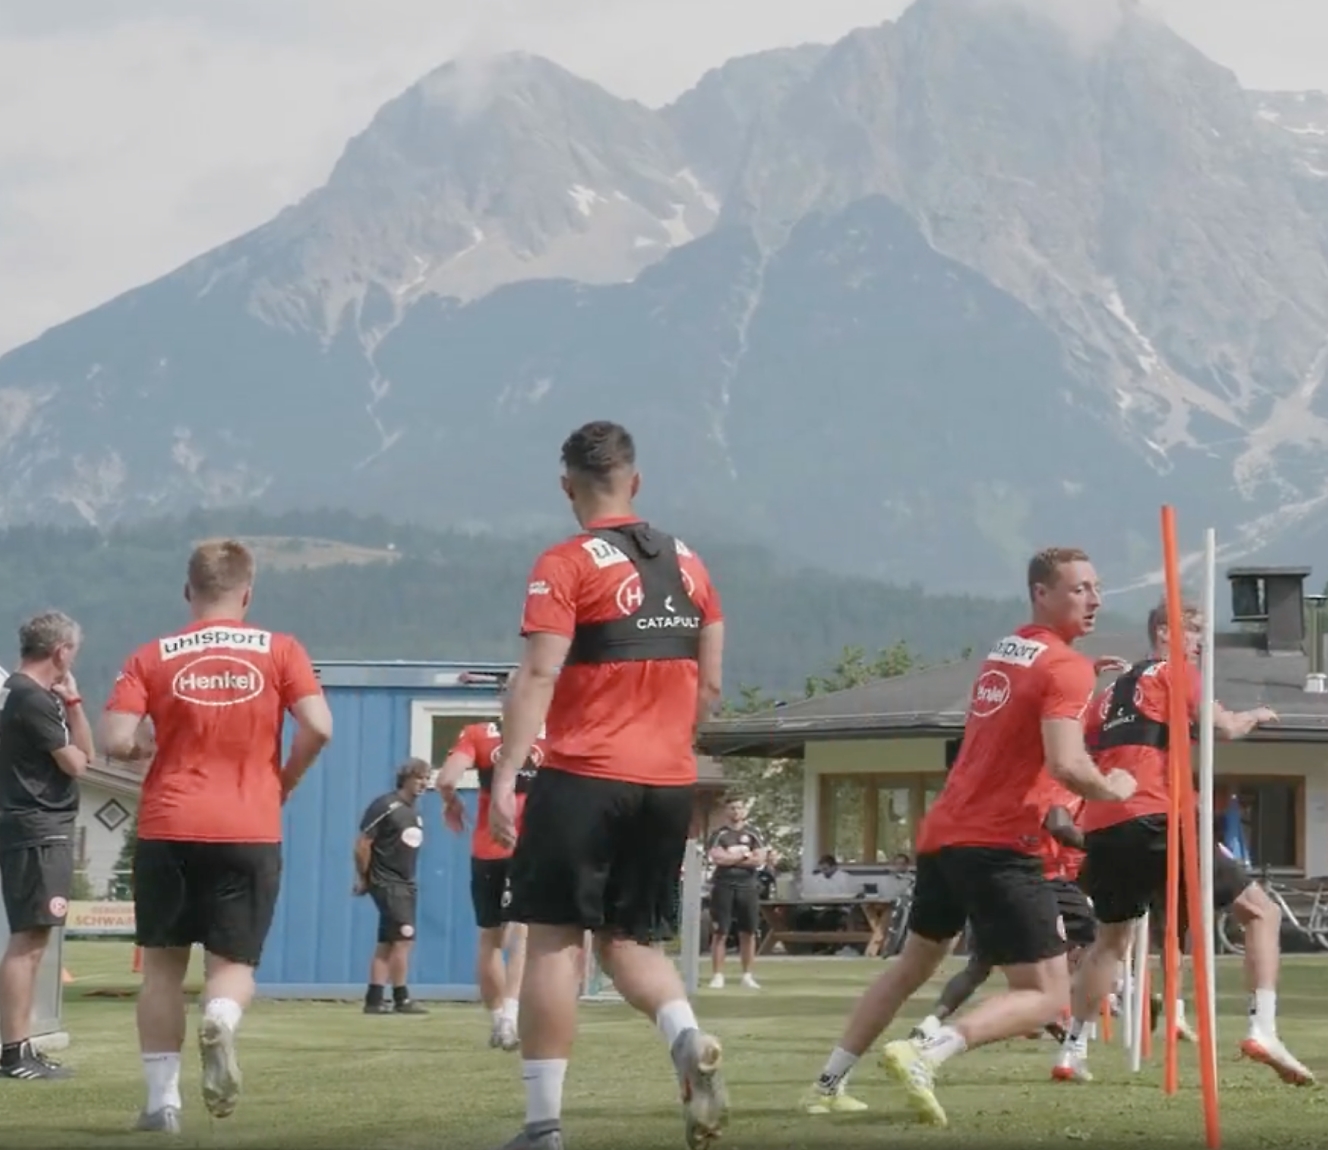 Raudonais marškinėliais vilkintys futbolininkai treniruojasi lauke, fone atsiveria kalnų vaizdai.